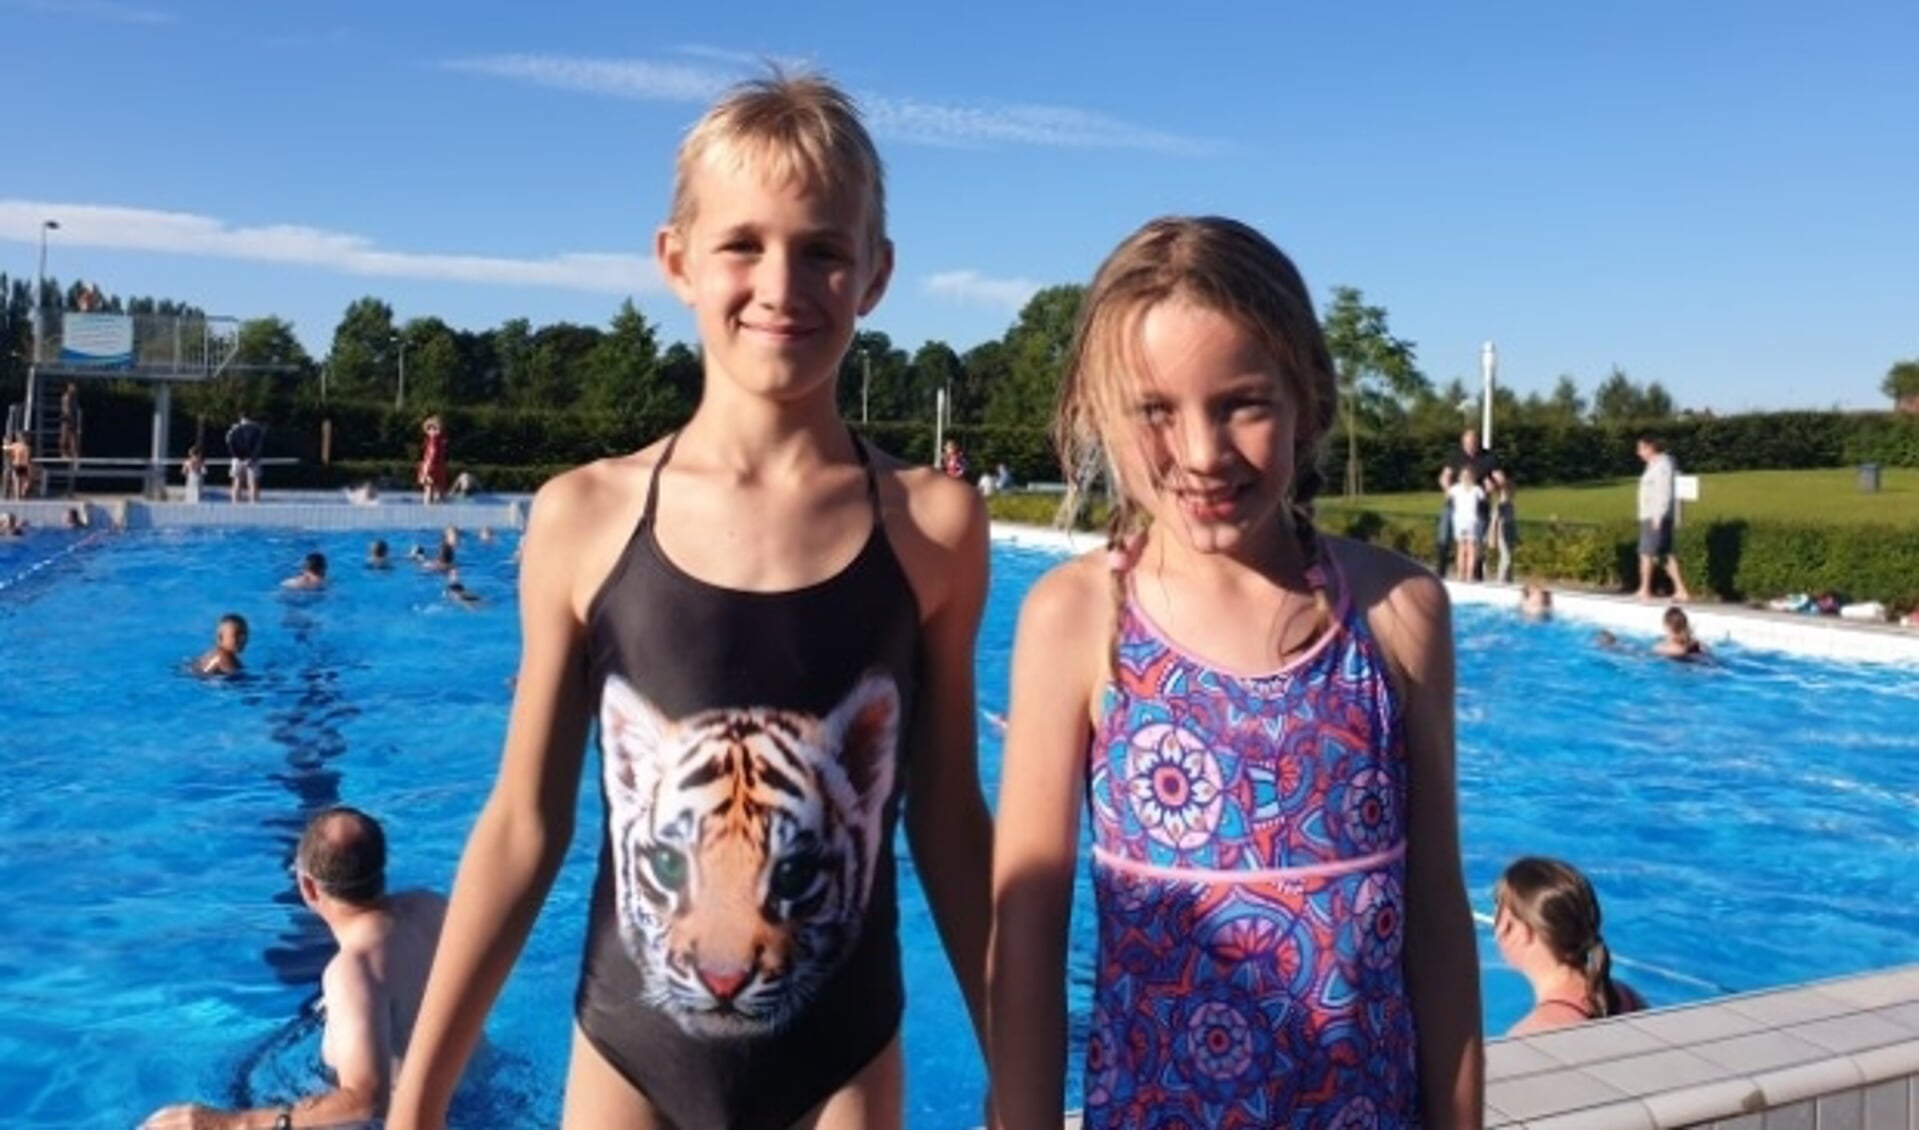 Moreno en Lisanne uit Delft waren speciaal naar Lansingerland gekomen om de vierdaagse te zwemmen.